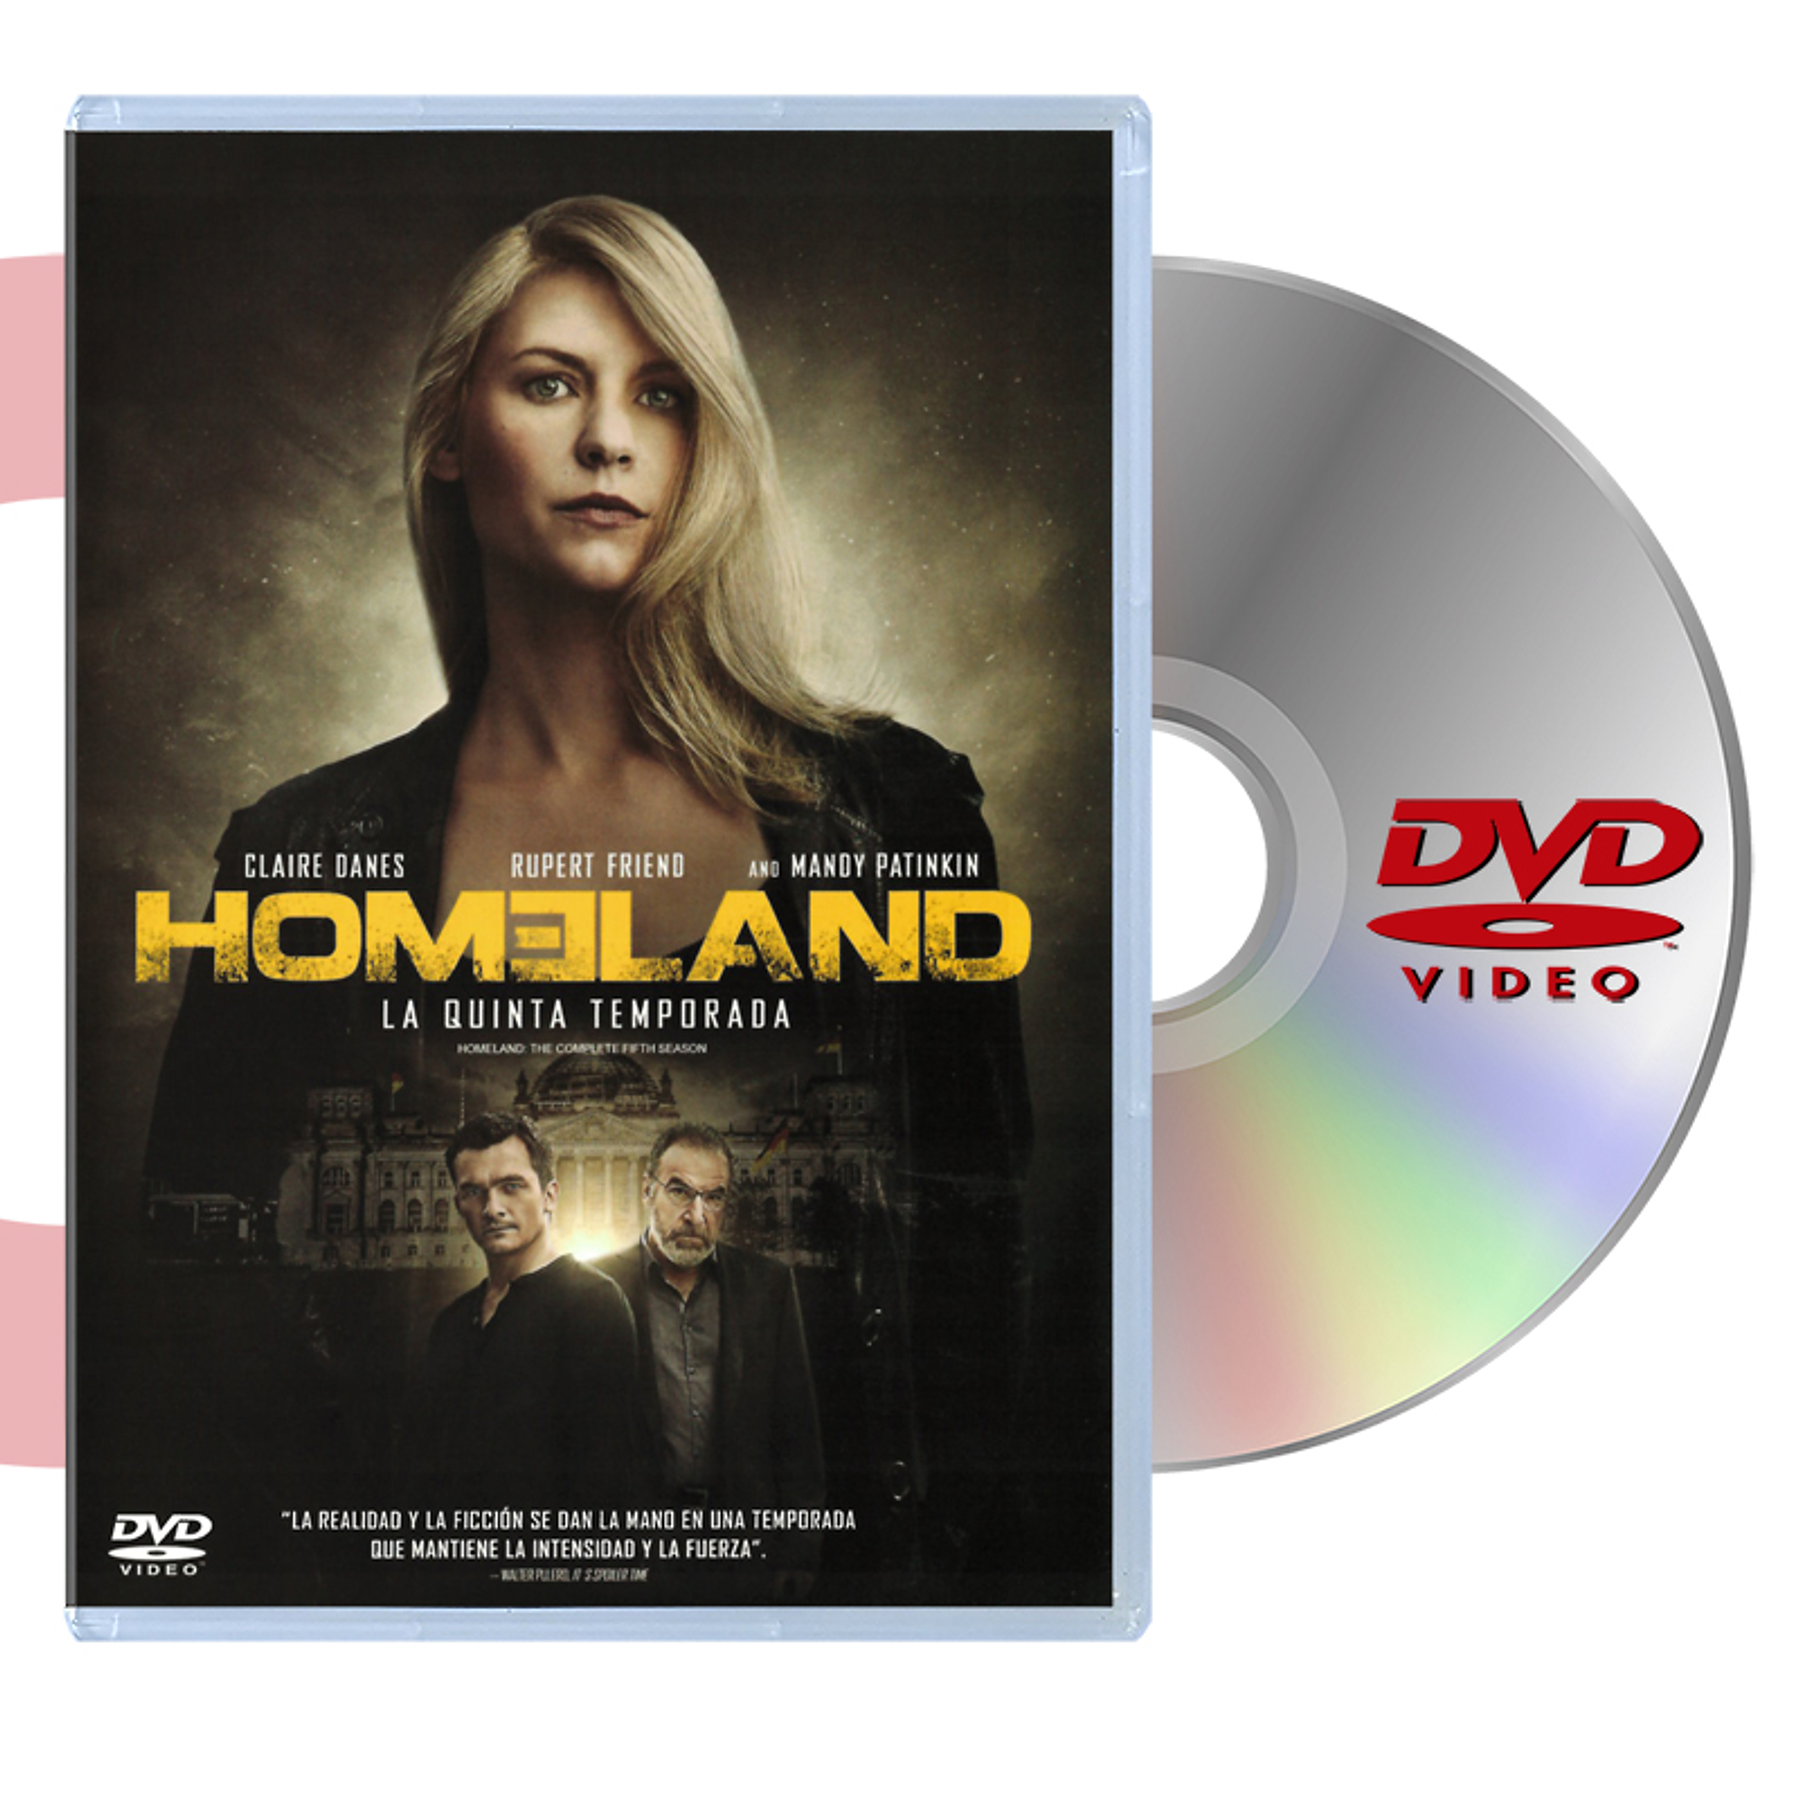 DVD HOMELAND S5 DVD